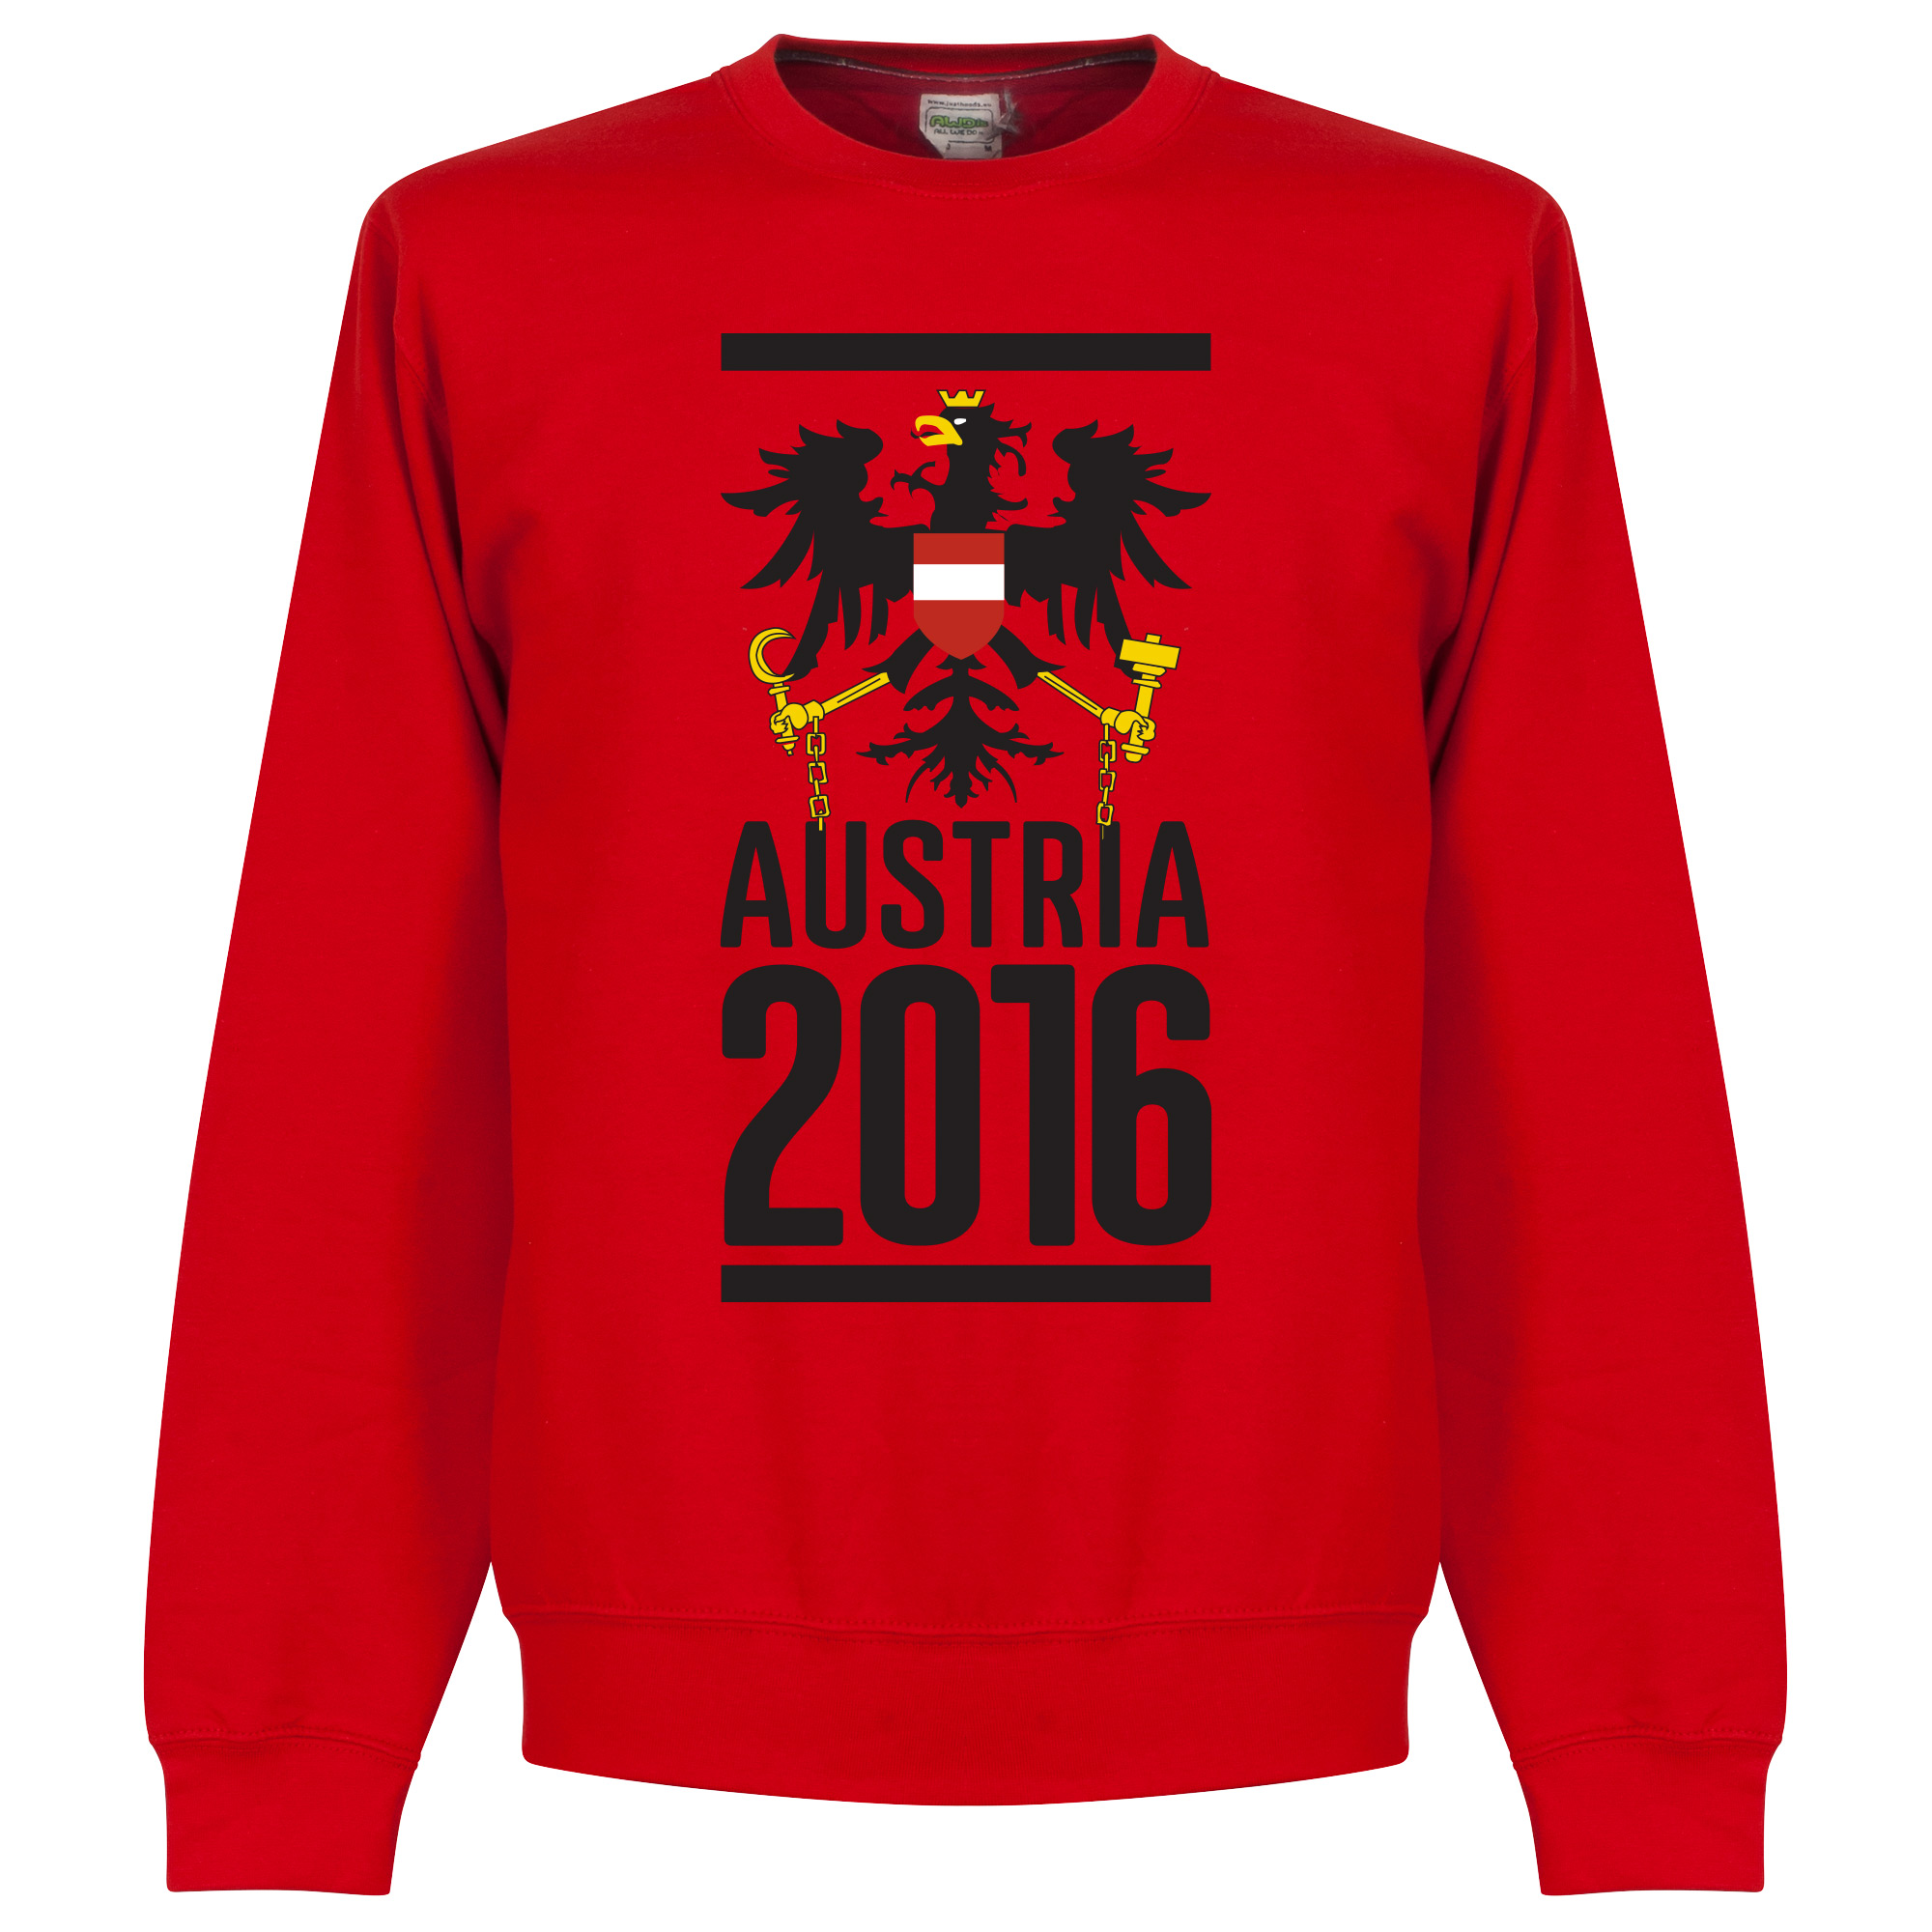 Oostenrijk 2016 Crew Neck Sweater - S